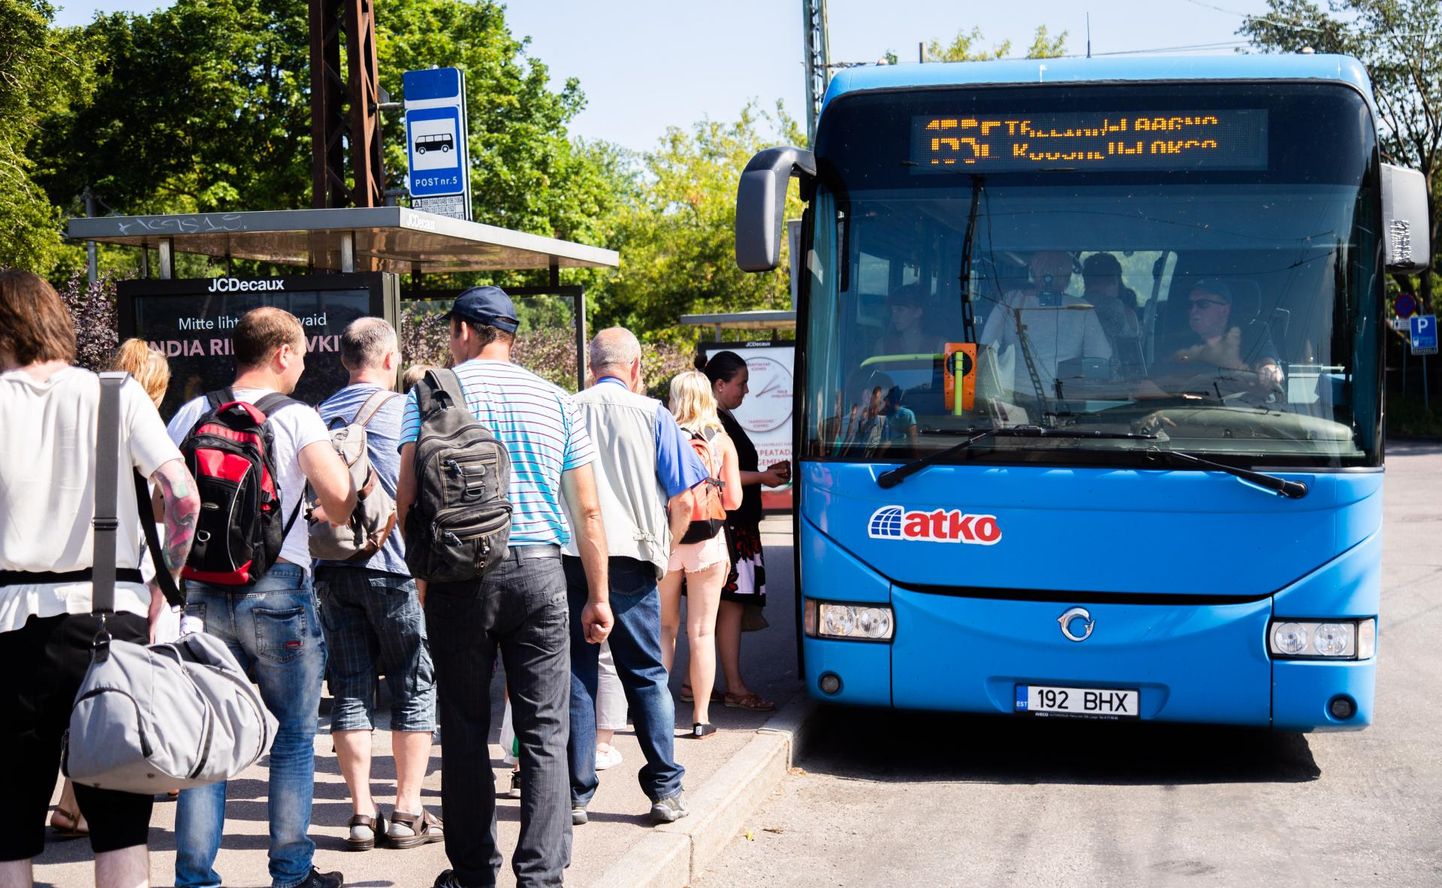 Põhja-Eesti ühistranspordikeskus plaanib ATKOga lepingute lõpetamist